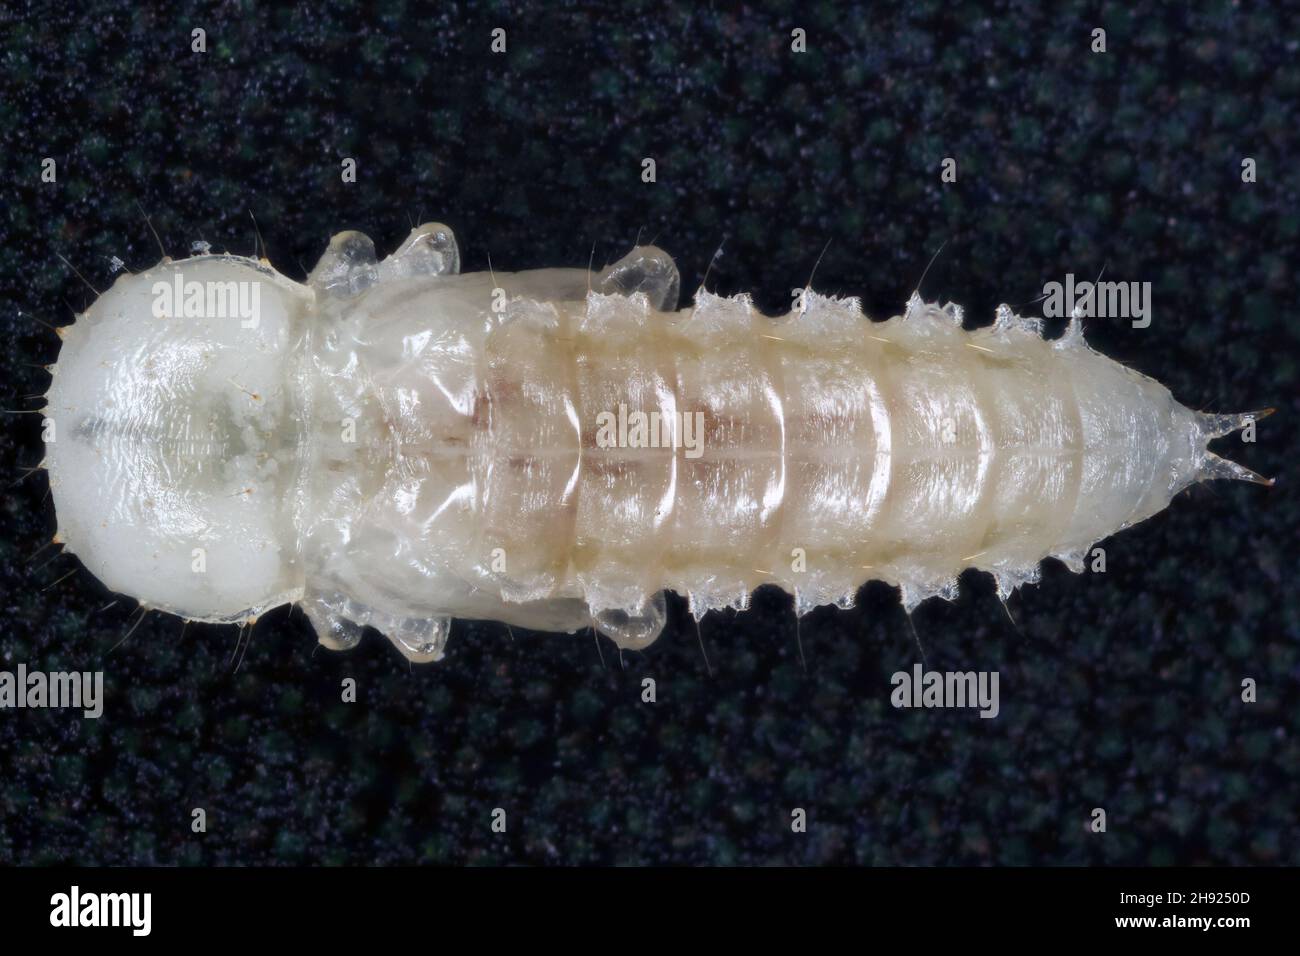 Pupa de escarabajo de harina de cuernos anchos: Gnatocerus cornutus - es una plaga almacenada. Foto de stock